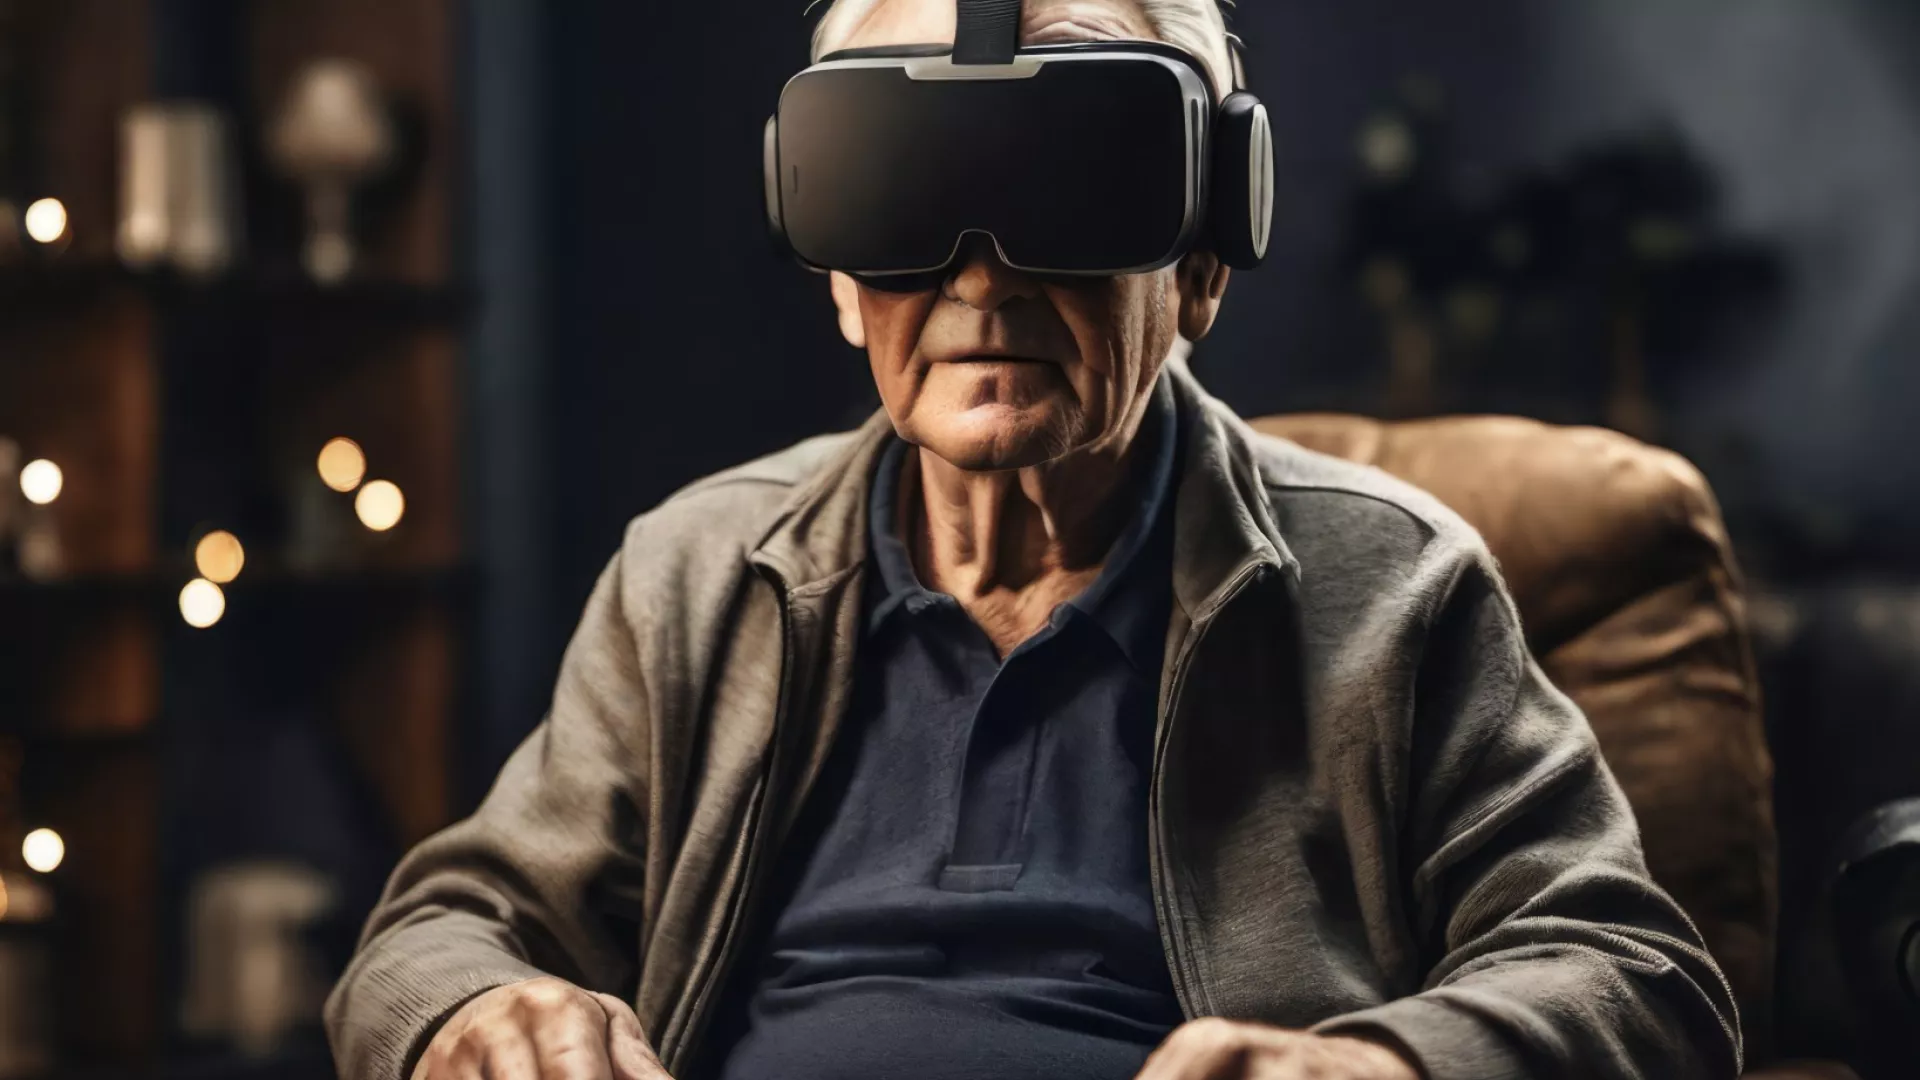 Использование виртуальной реальности для борьбы с депрессией